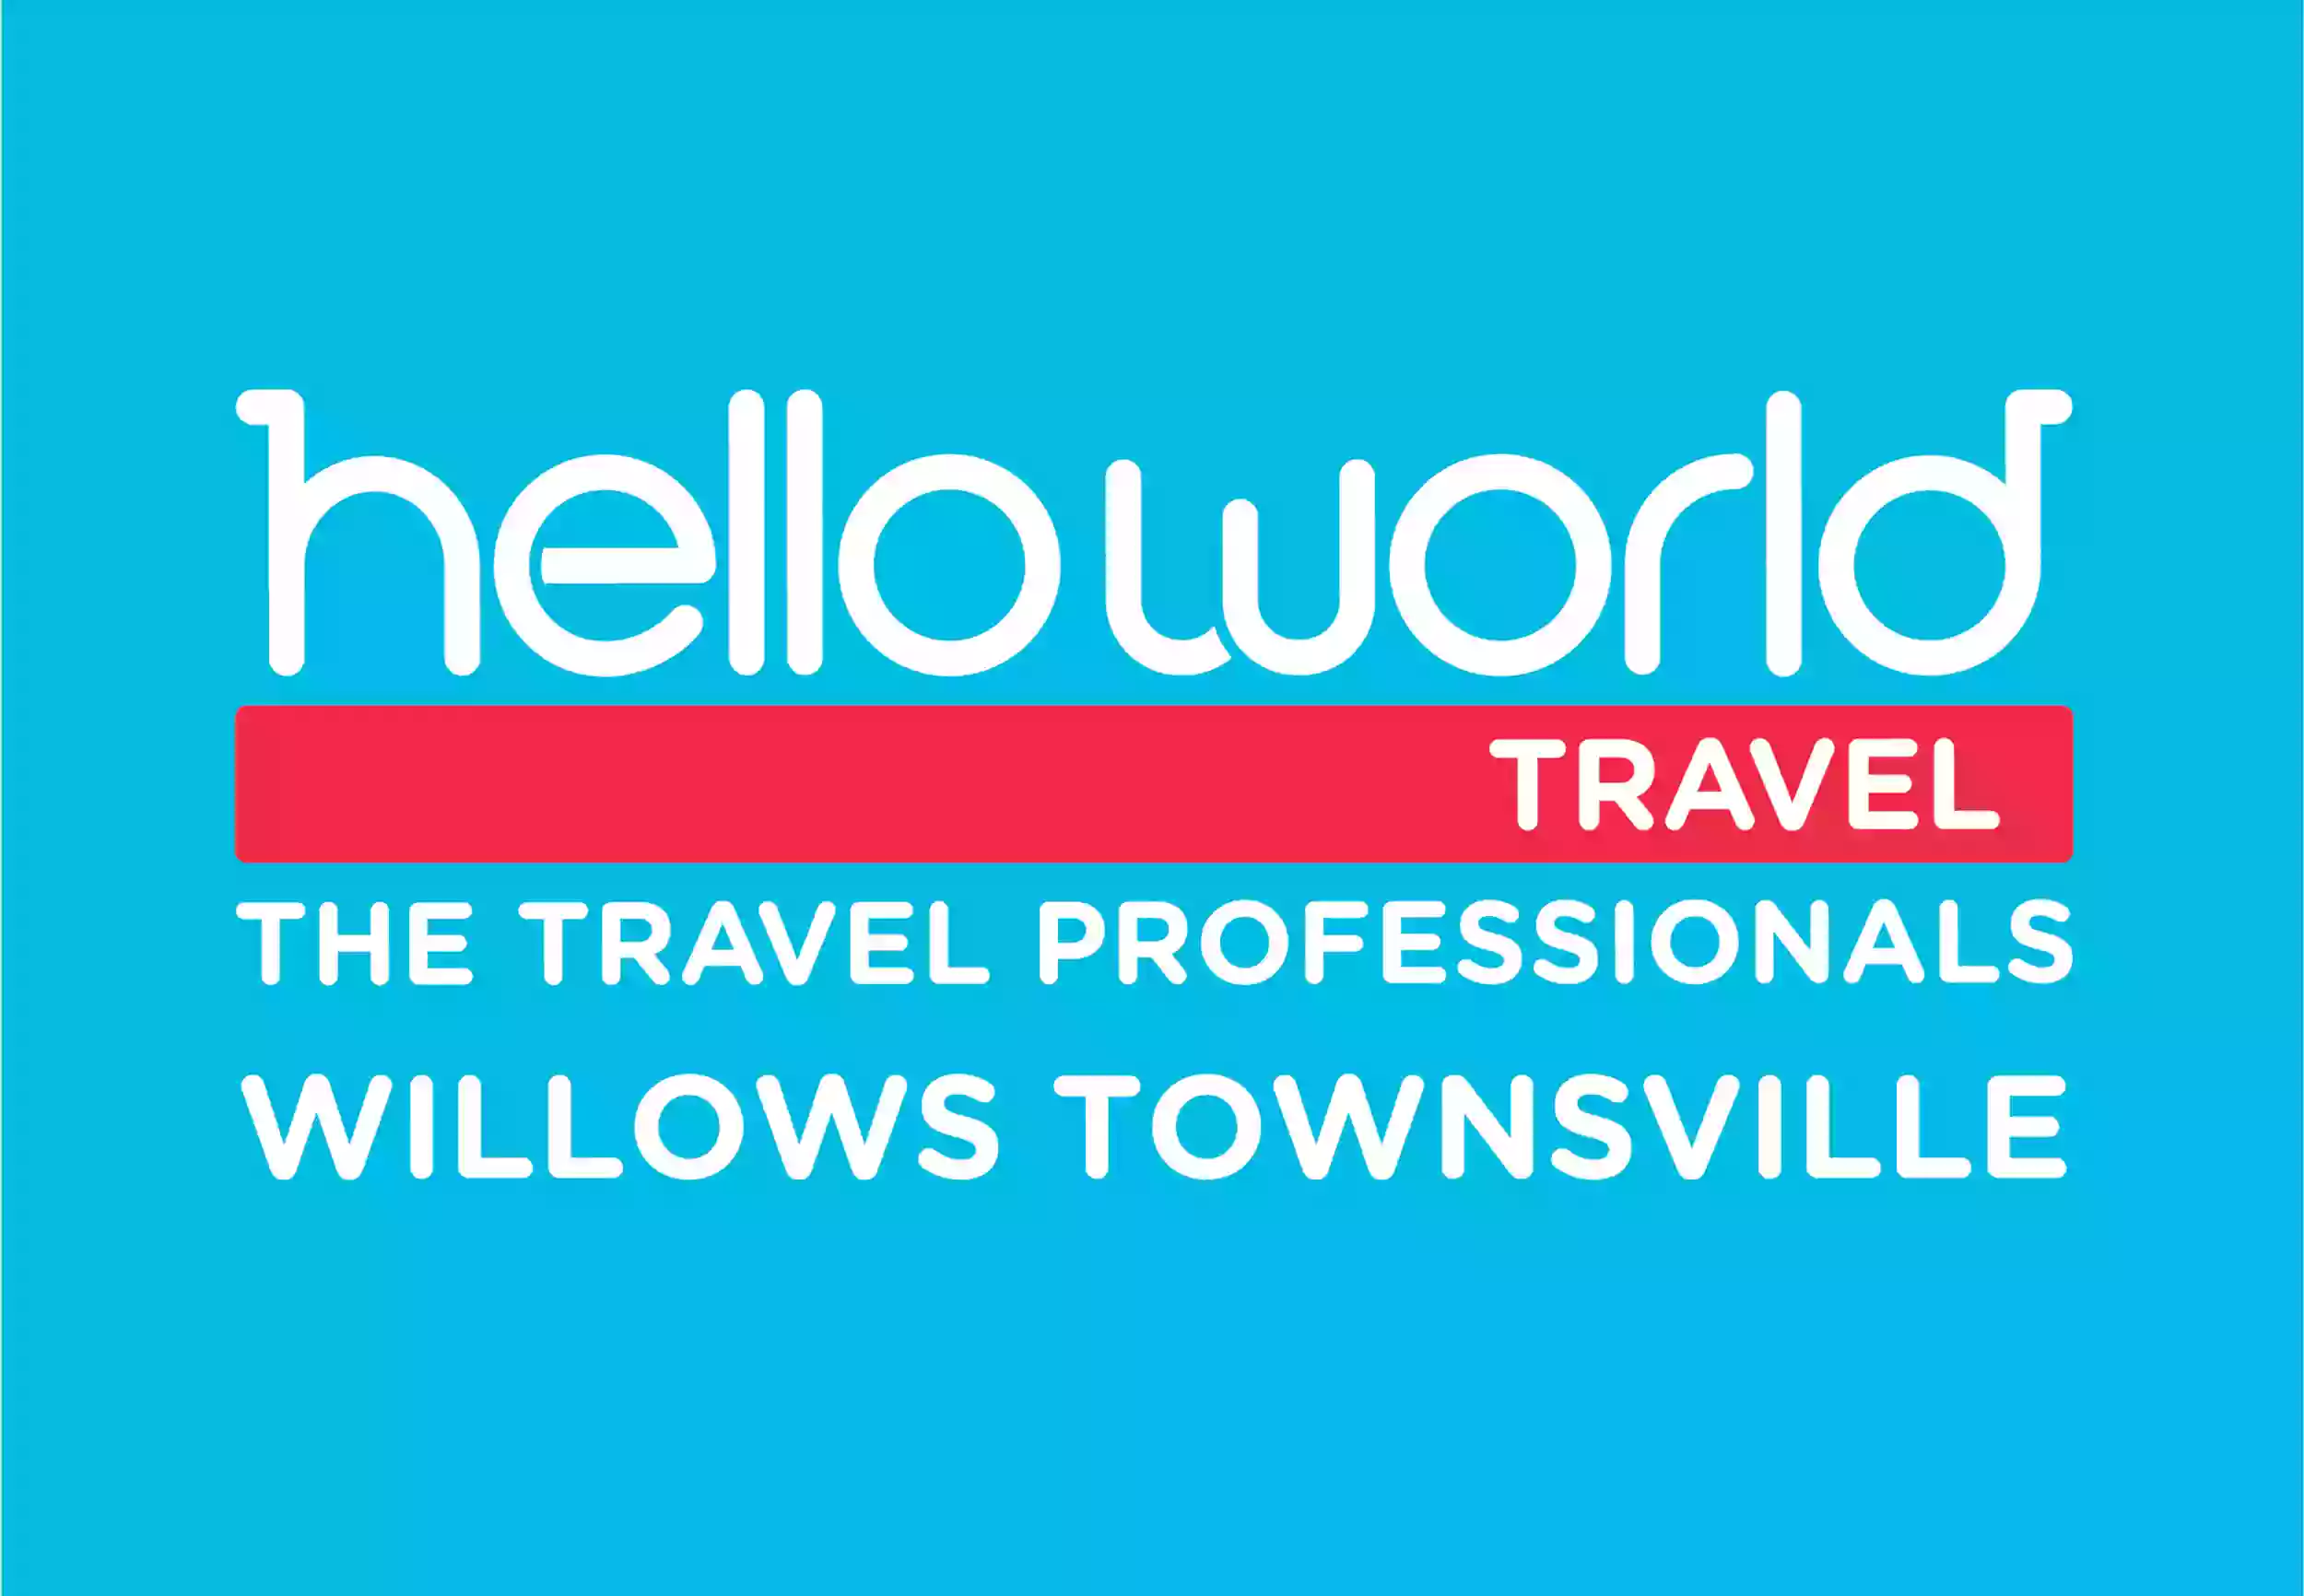 Helloworld Willows Townsville